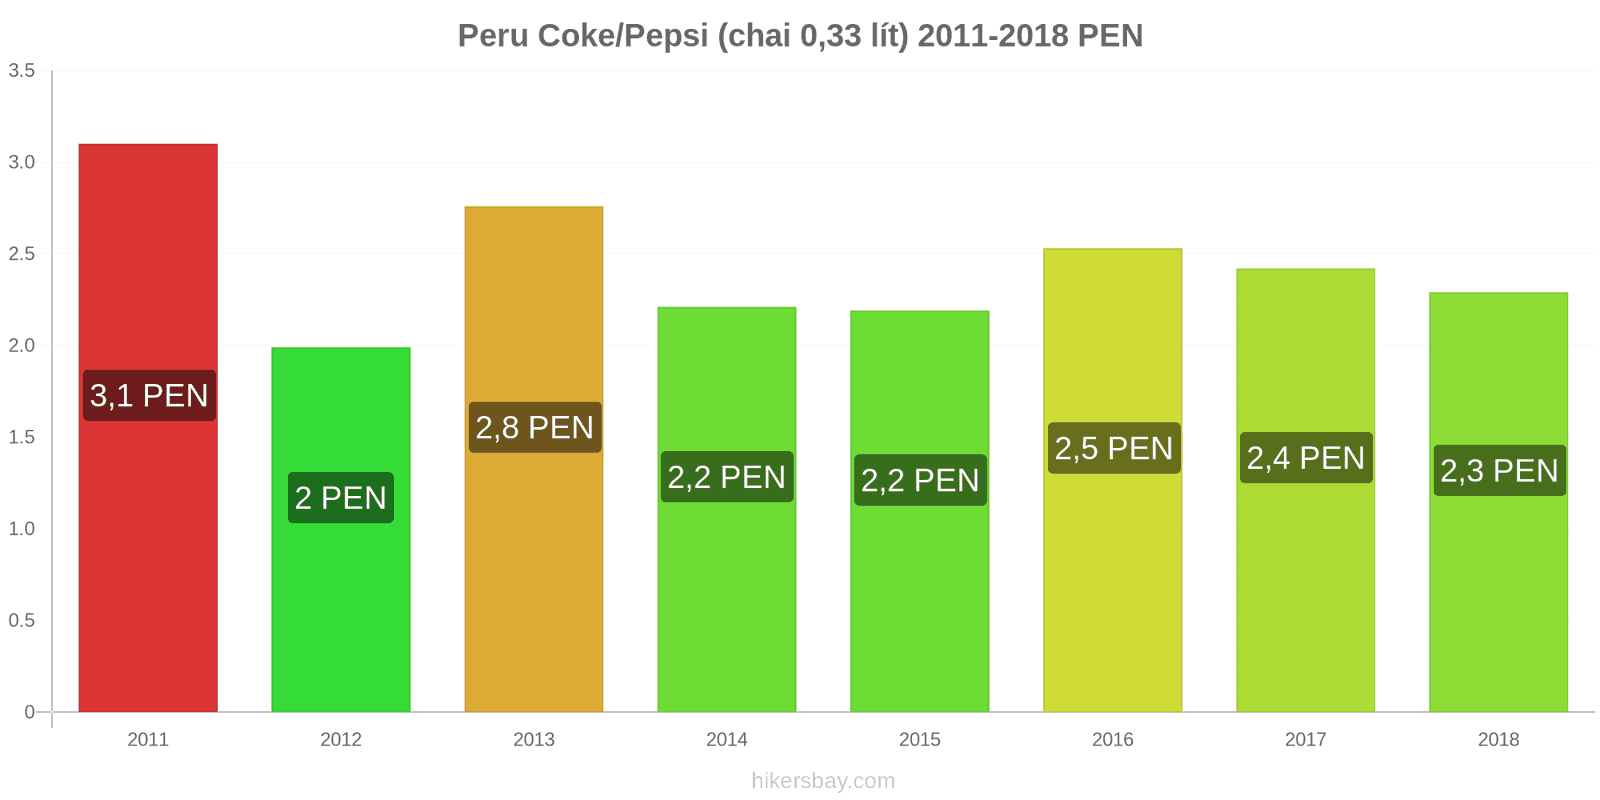 Peru thay đổi giá cả Coca-Cola/Pepsi (chai 0.33 lít) hikersbay.com